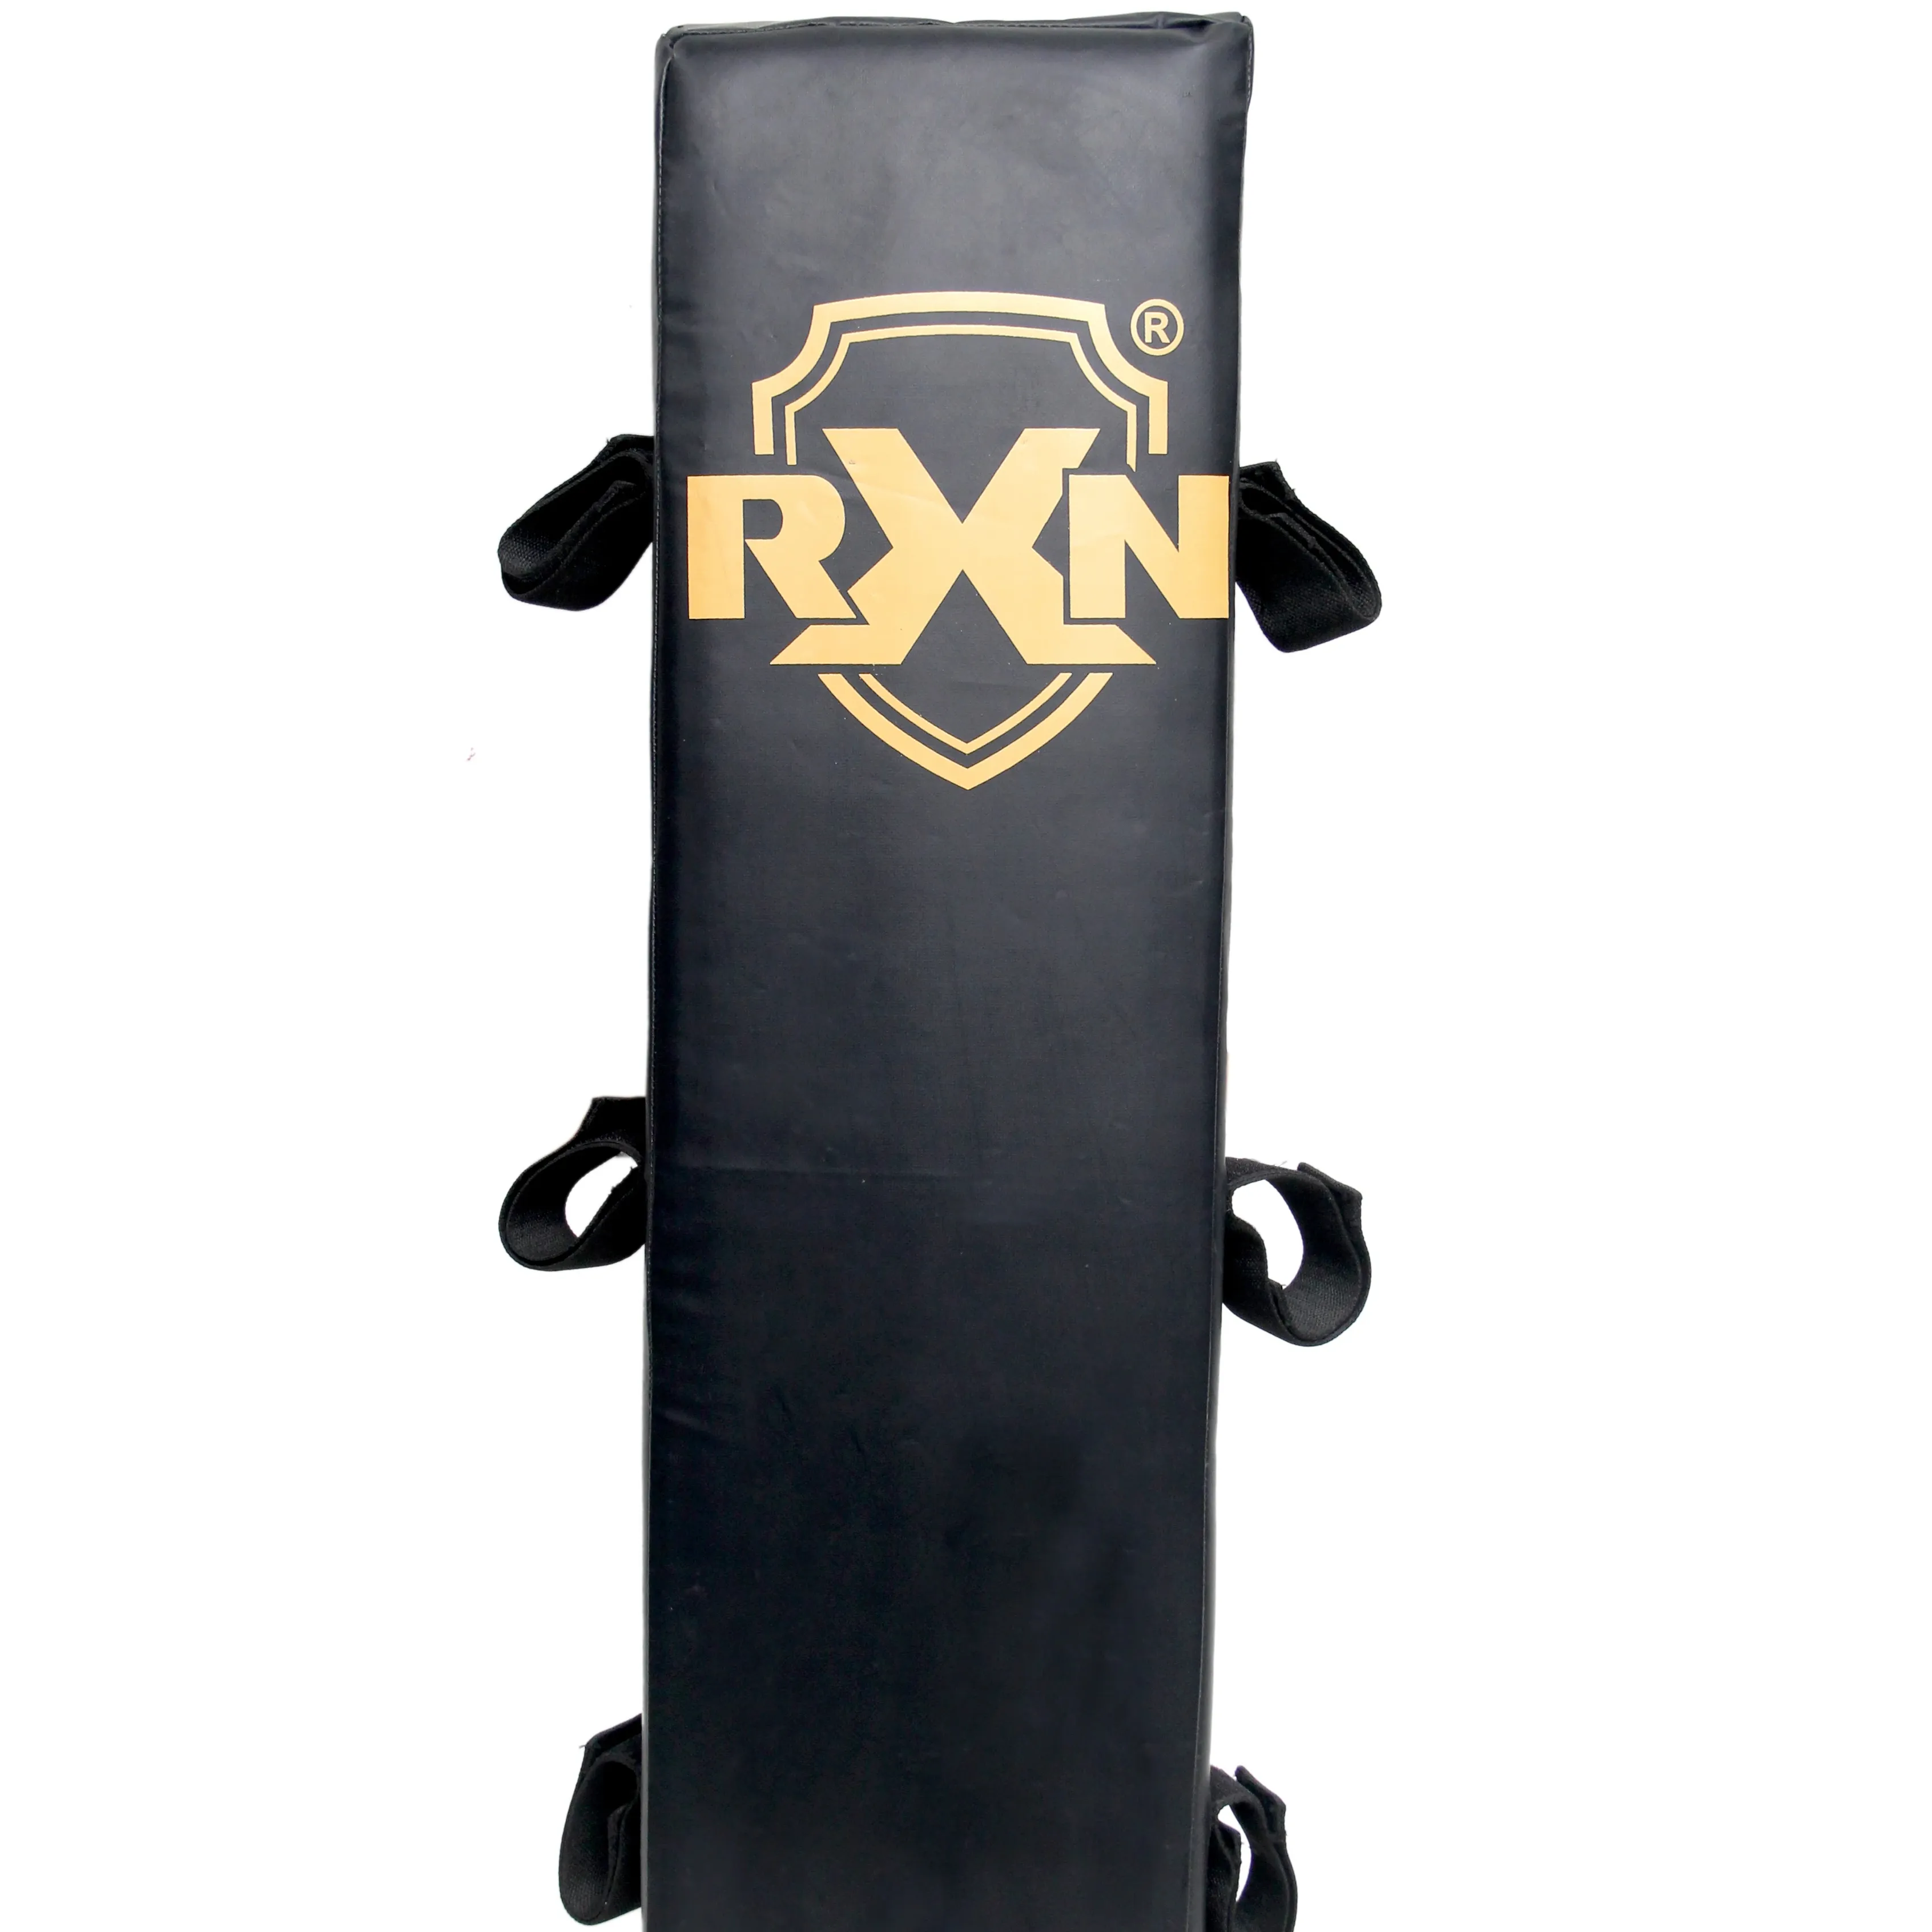 Угловые подушечки для боксерских ринг, аксессуары от производителя и поставщика с индивидуальным логотипом, доступные по низким ценам, угловые подставки